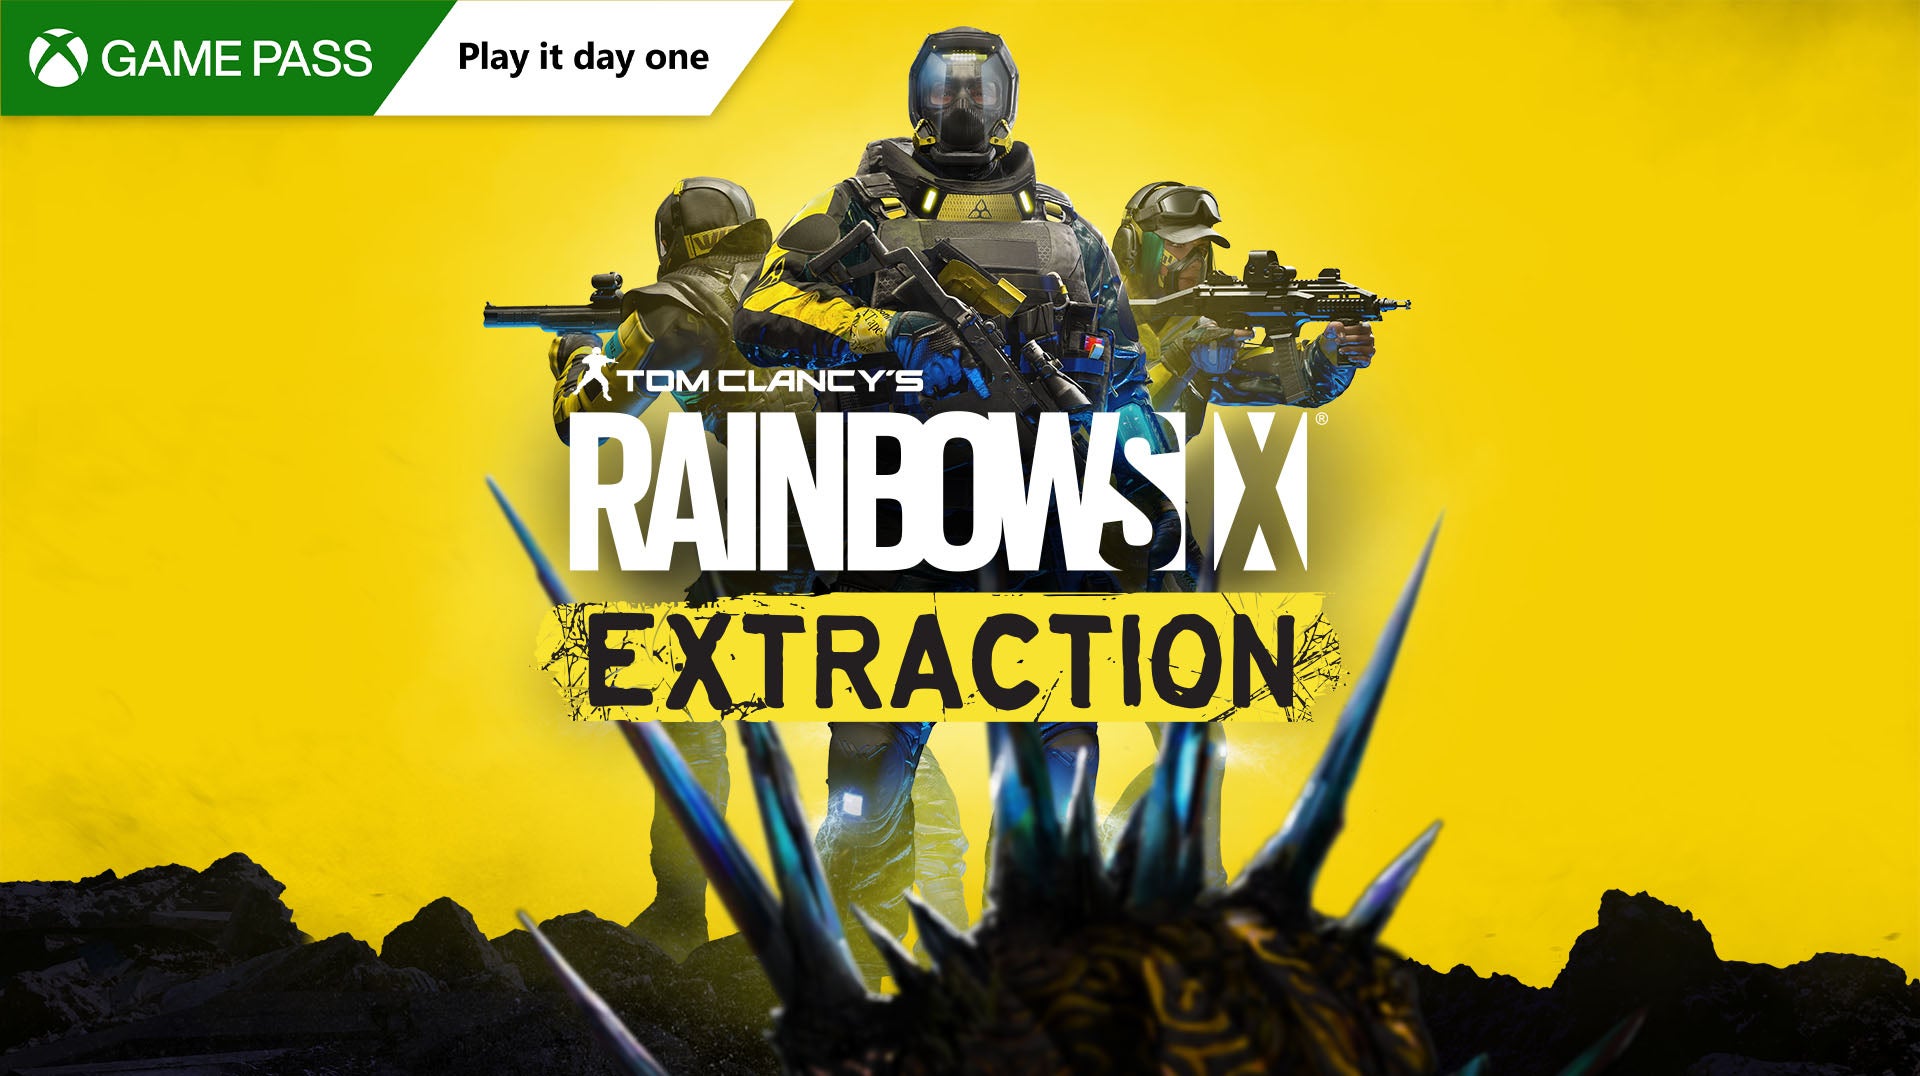 Imagen para Rainbow Six Extraction estará disponible de lanzamiento en Game Pass para PC y consolas Xbox